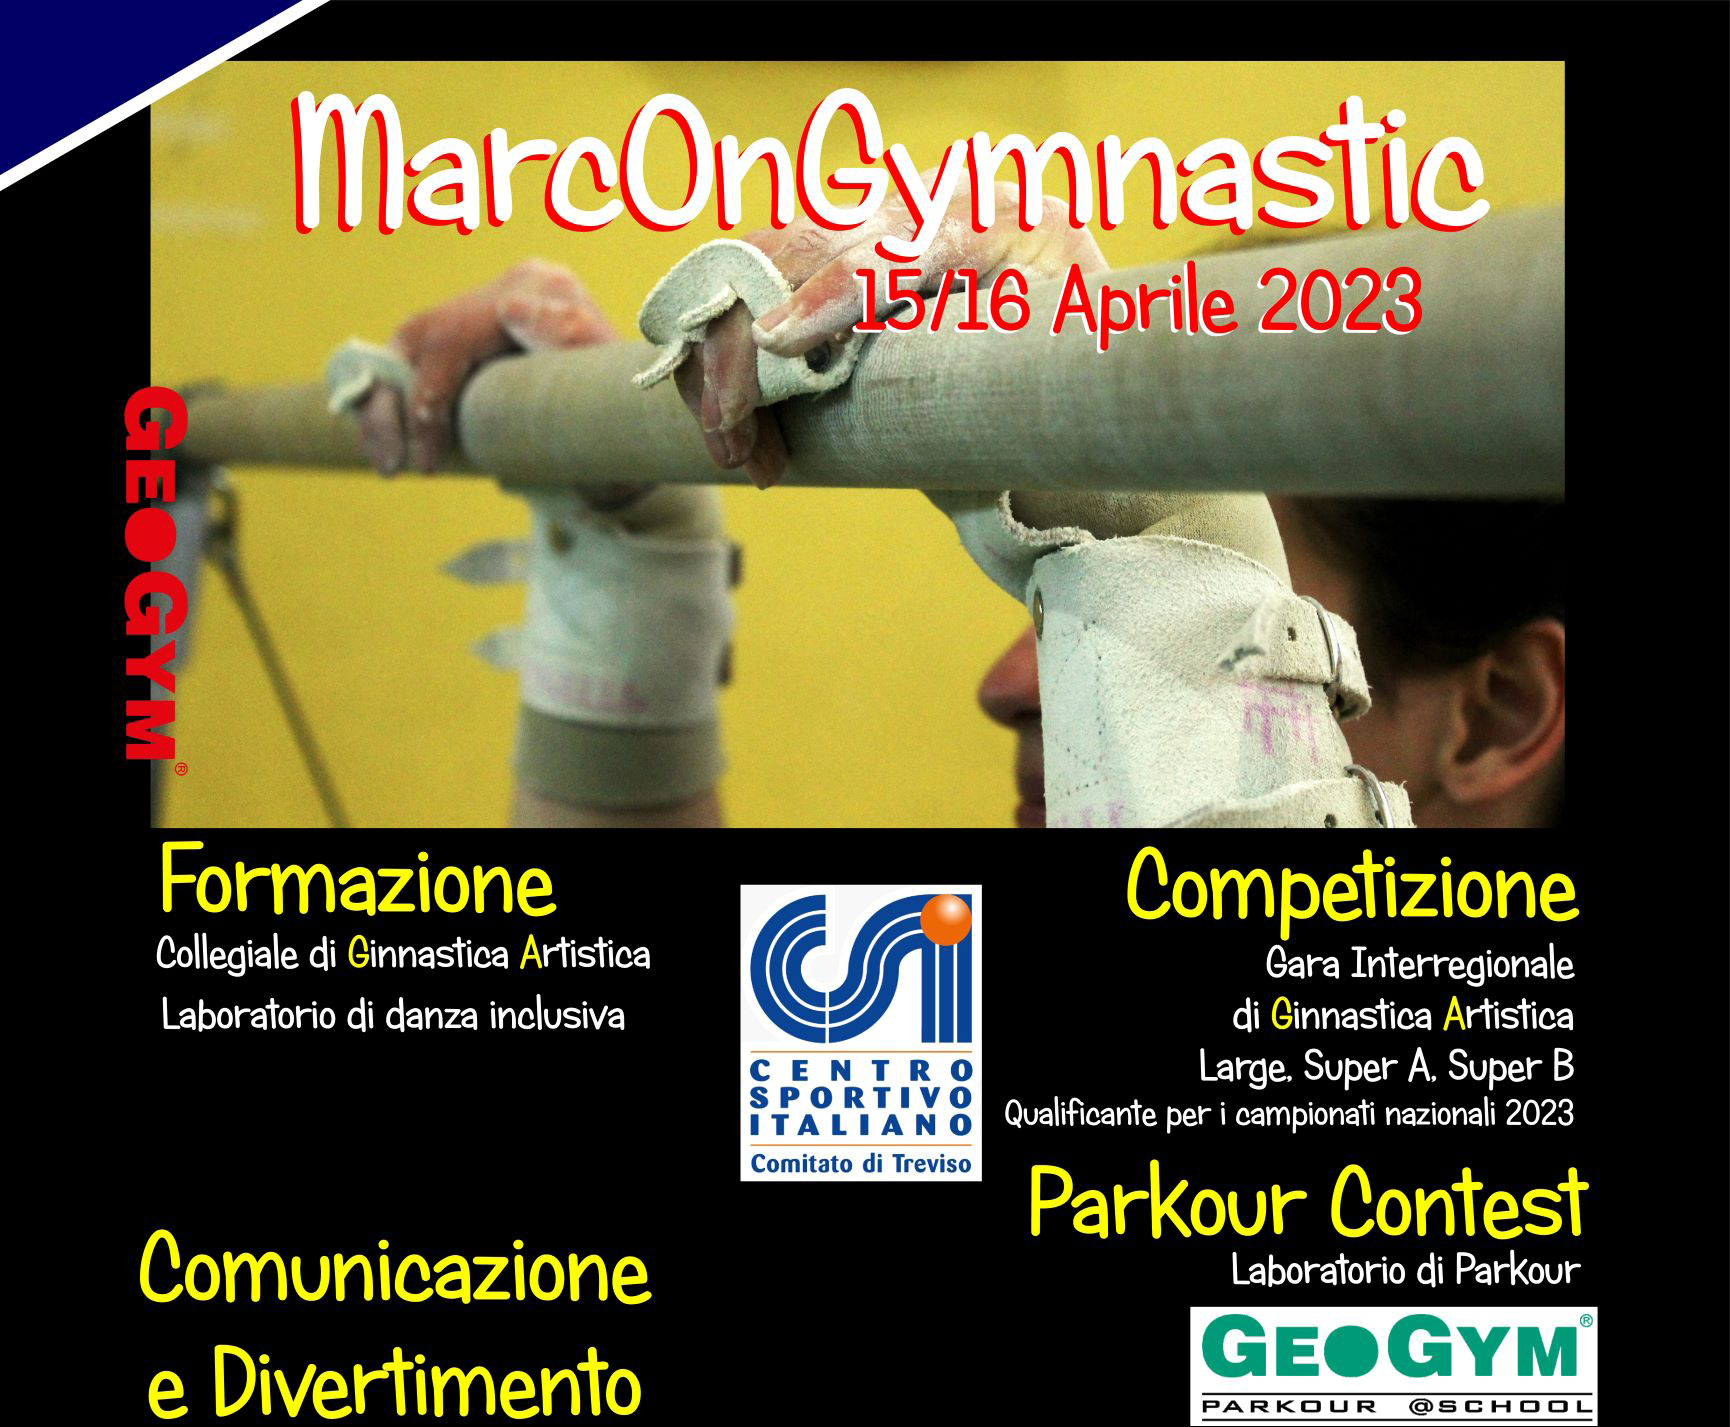 MarcOnGymnastic